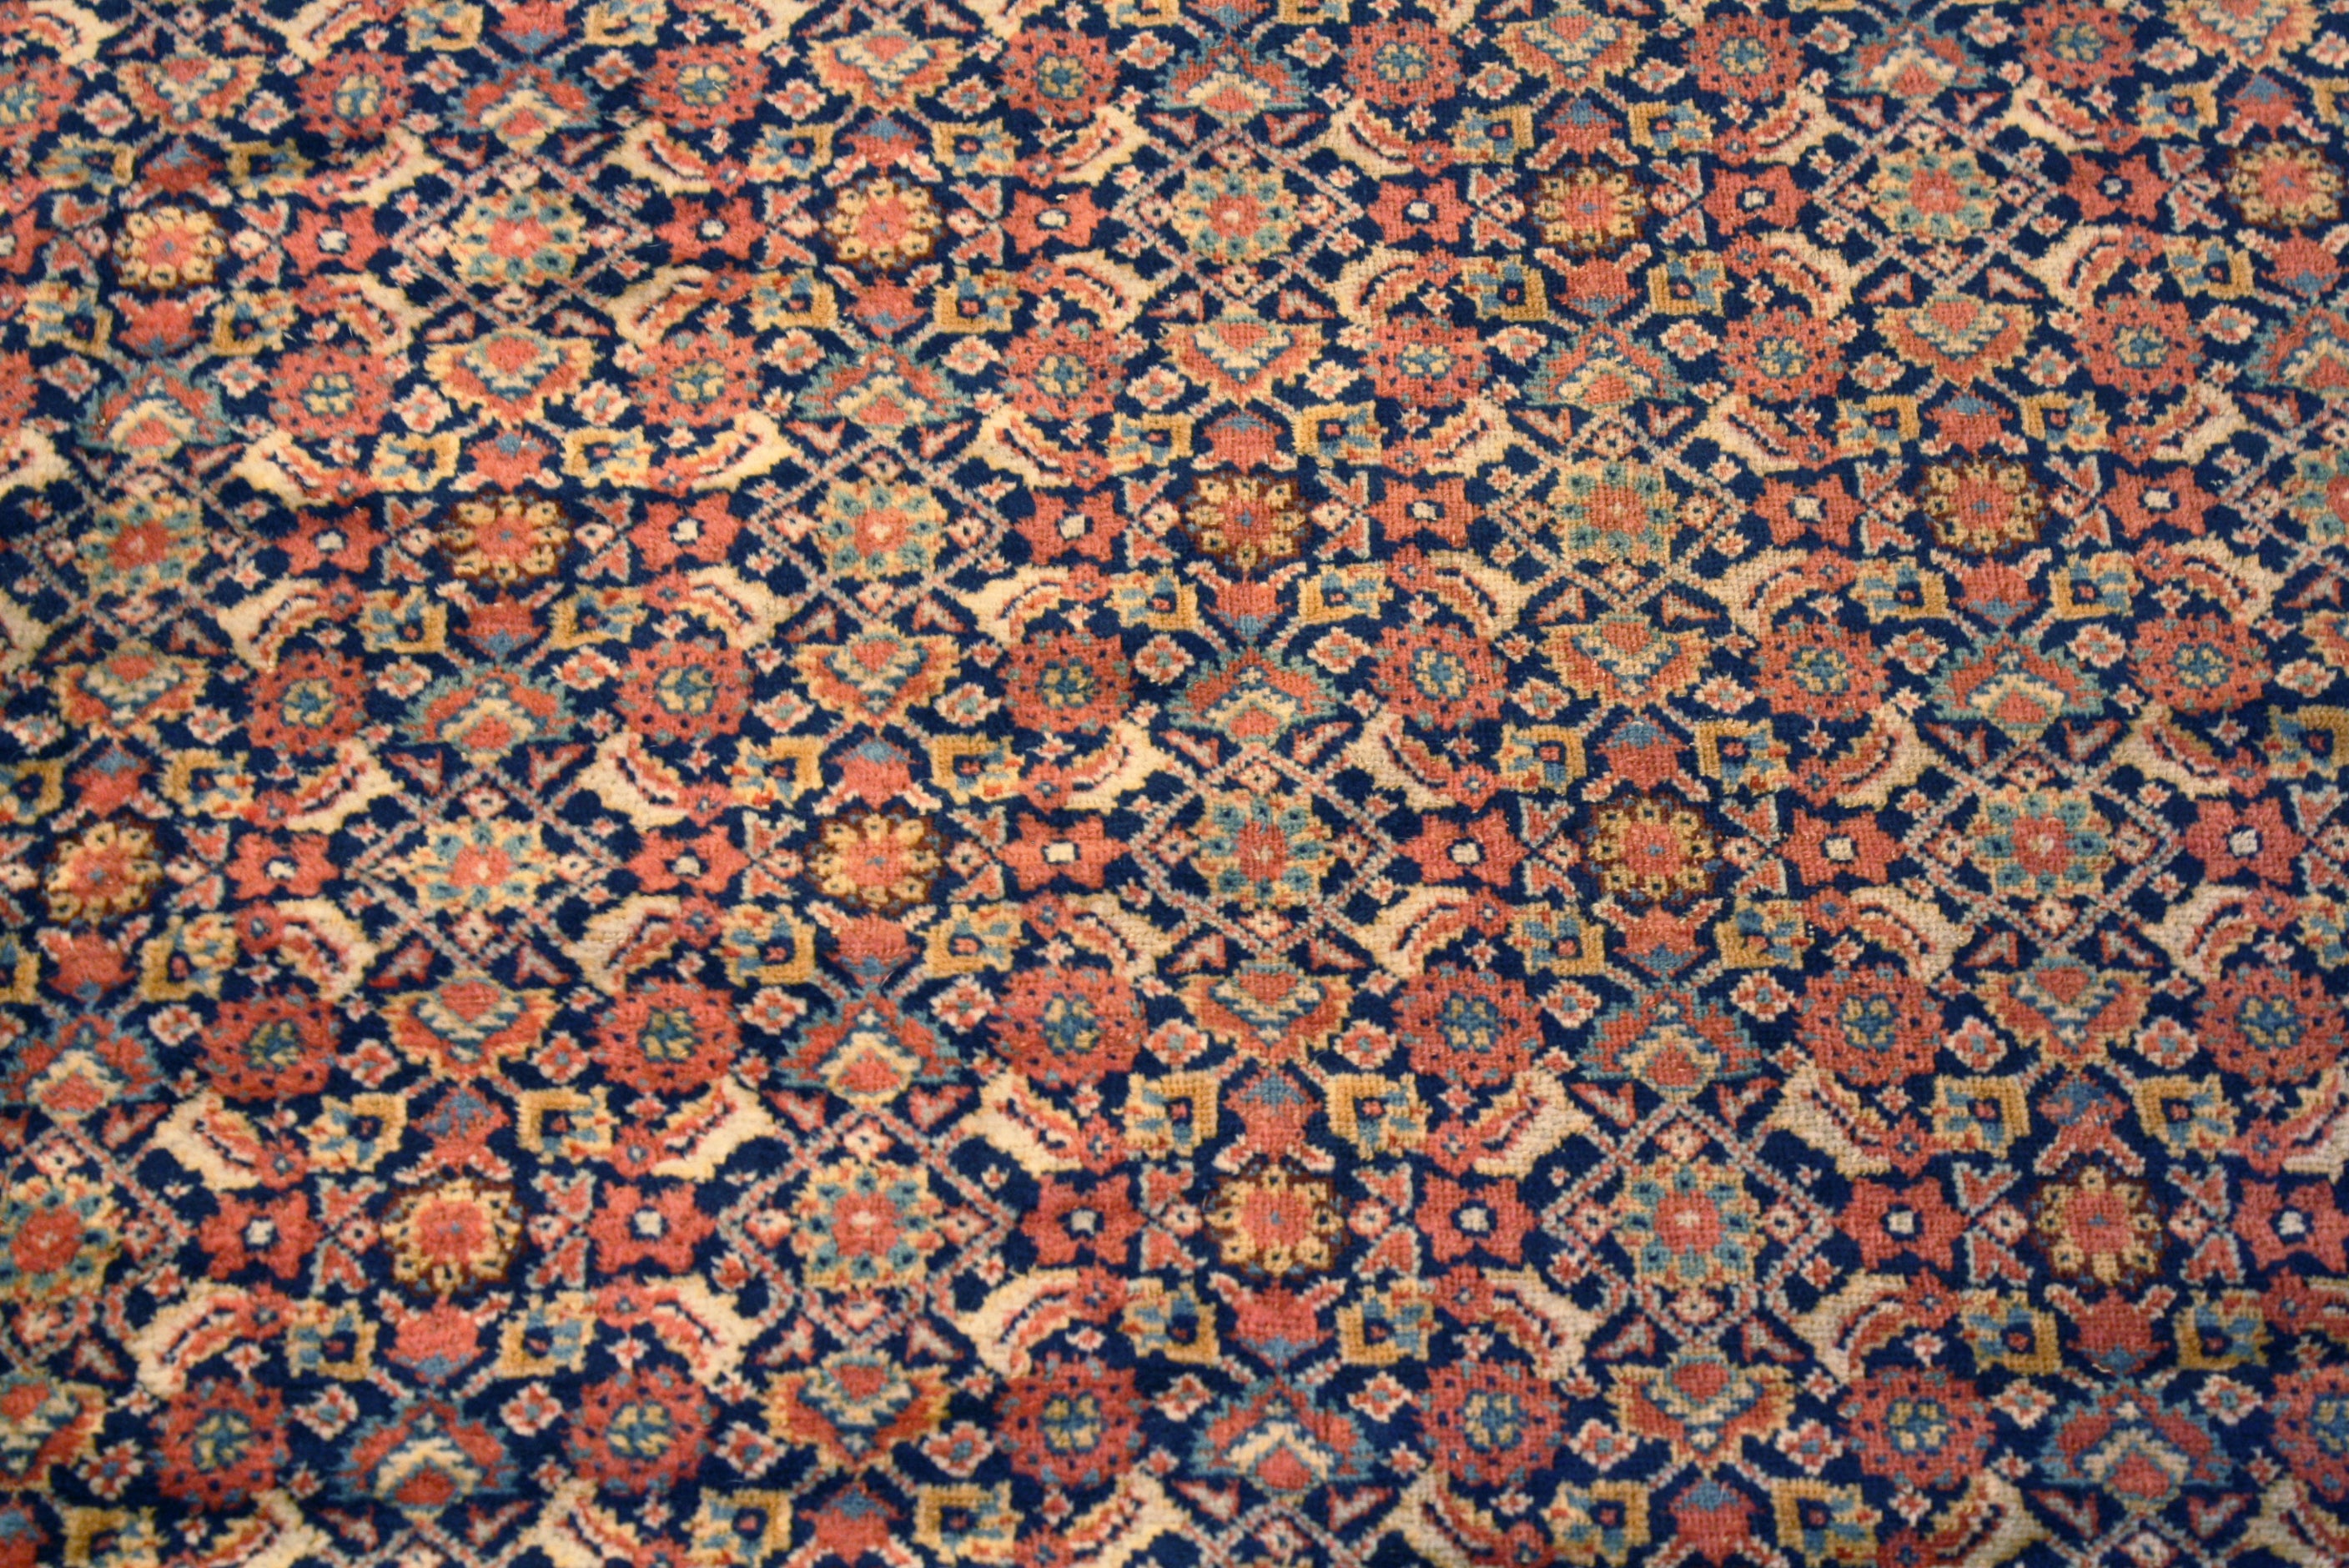 Reweaved antique Persian rug restoration